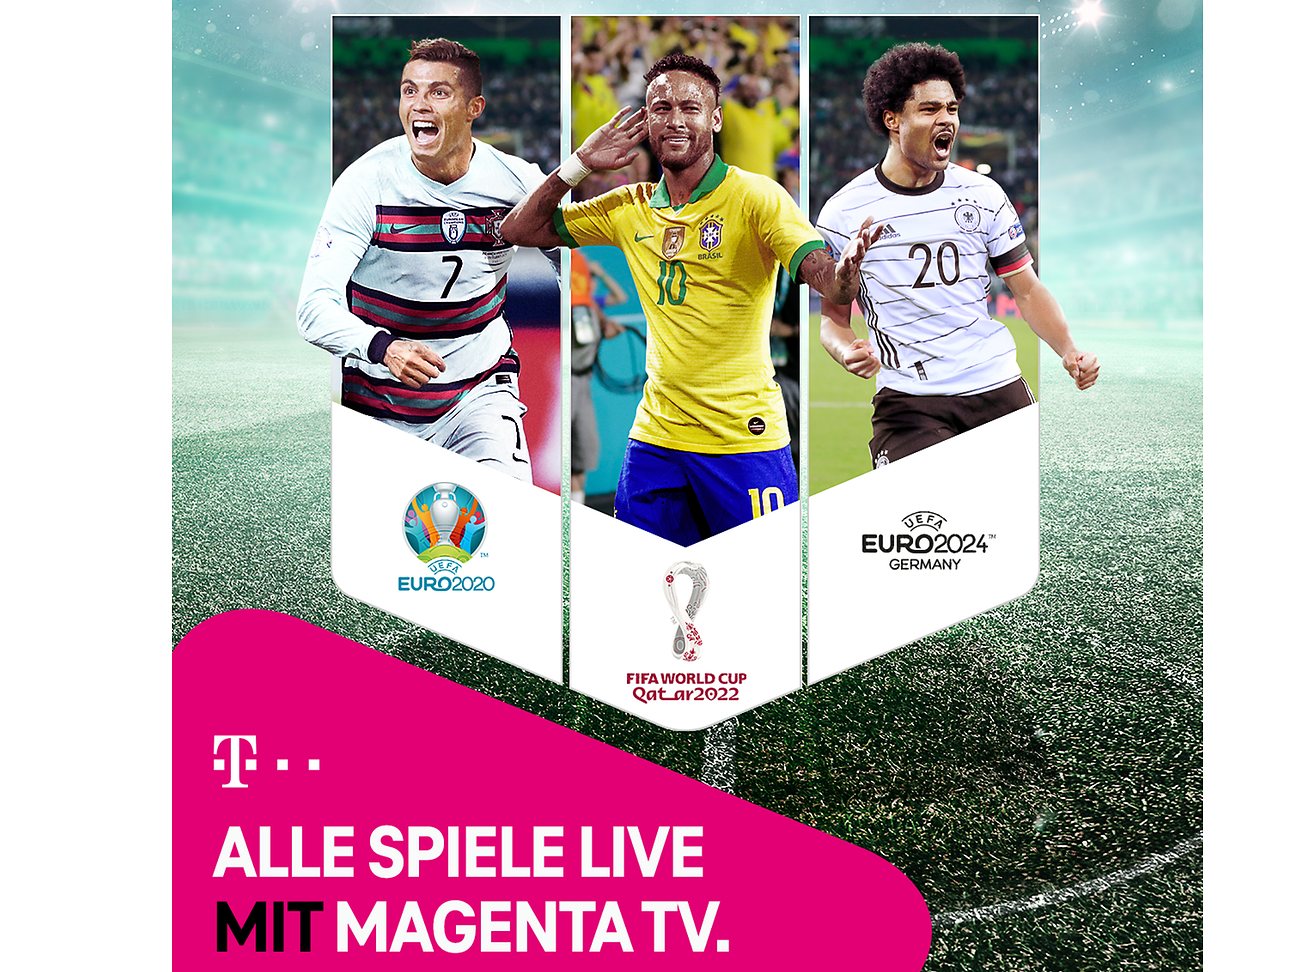 Alle Spiele der EM 2020, WM 2022 und EM 2024 live und in Ultra-HD bei MagentaTV Deutsche Telekom